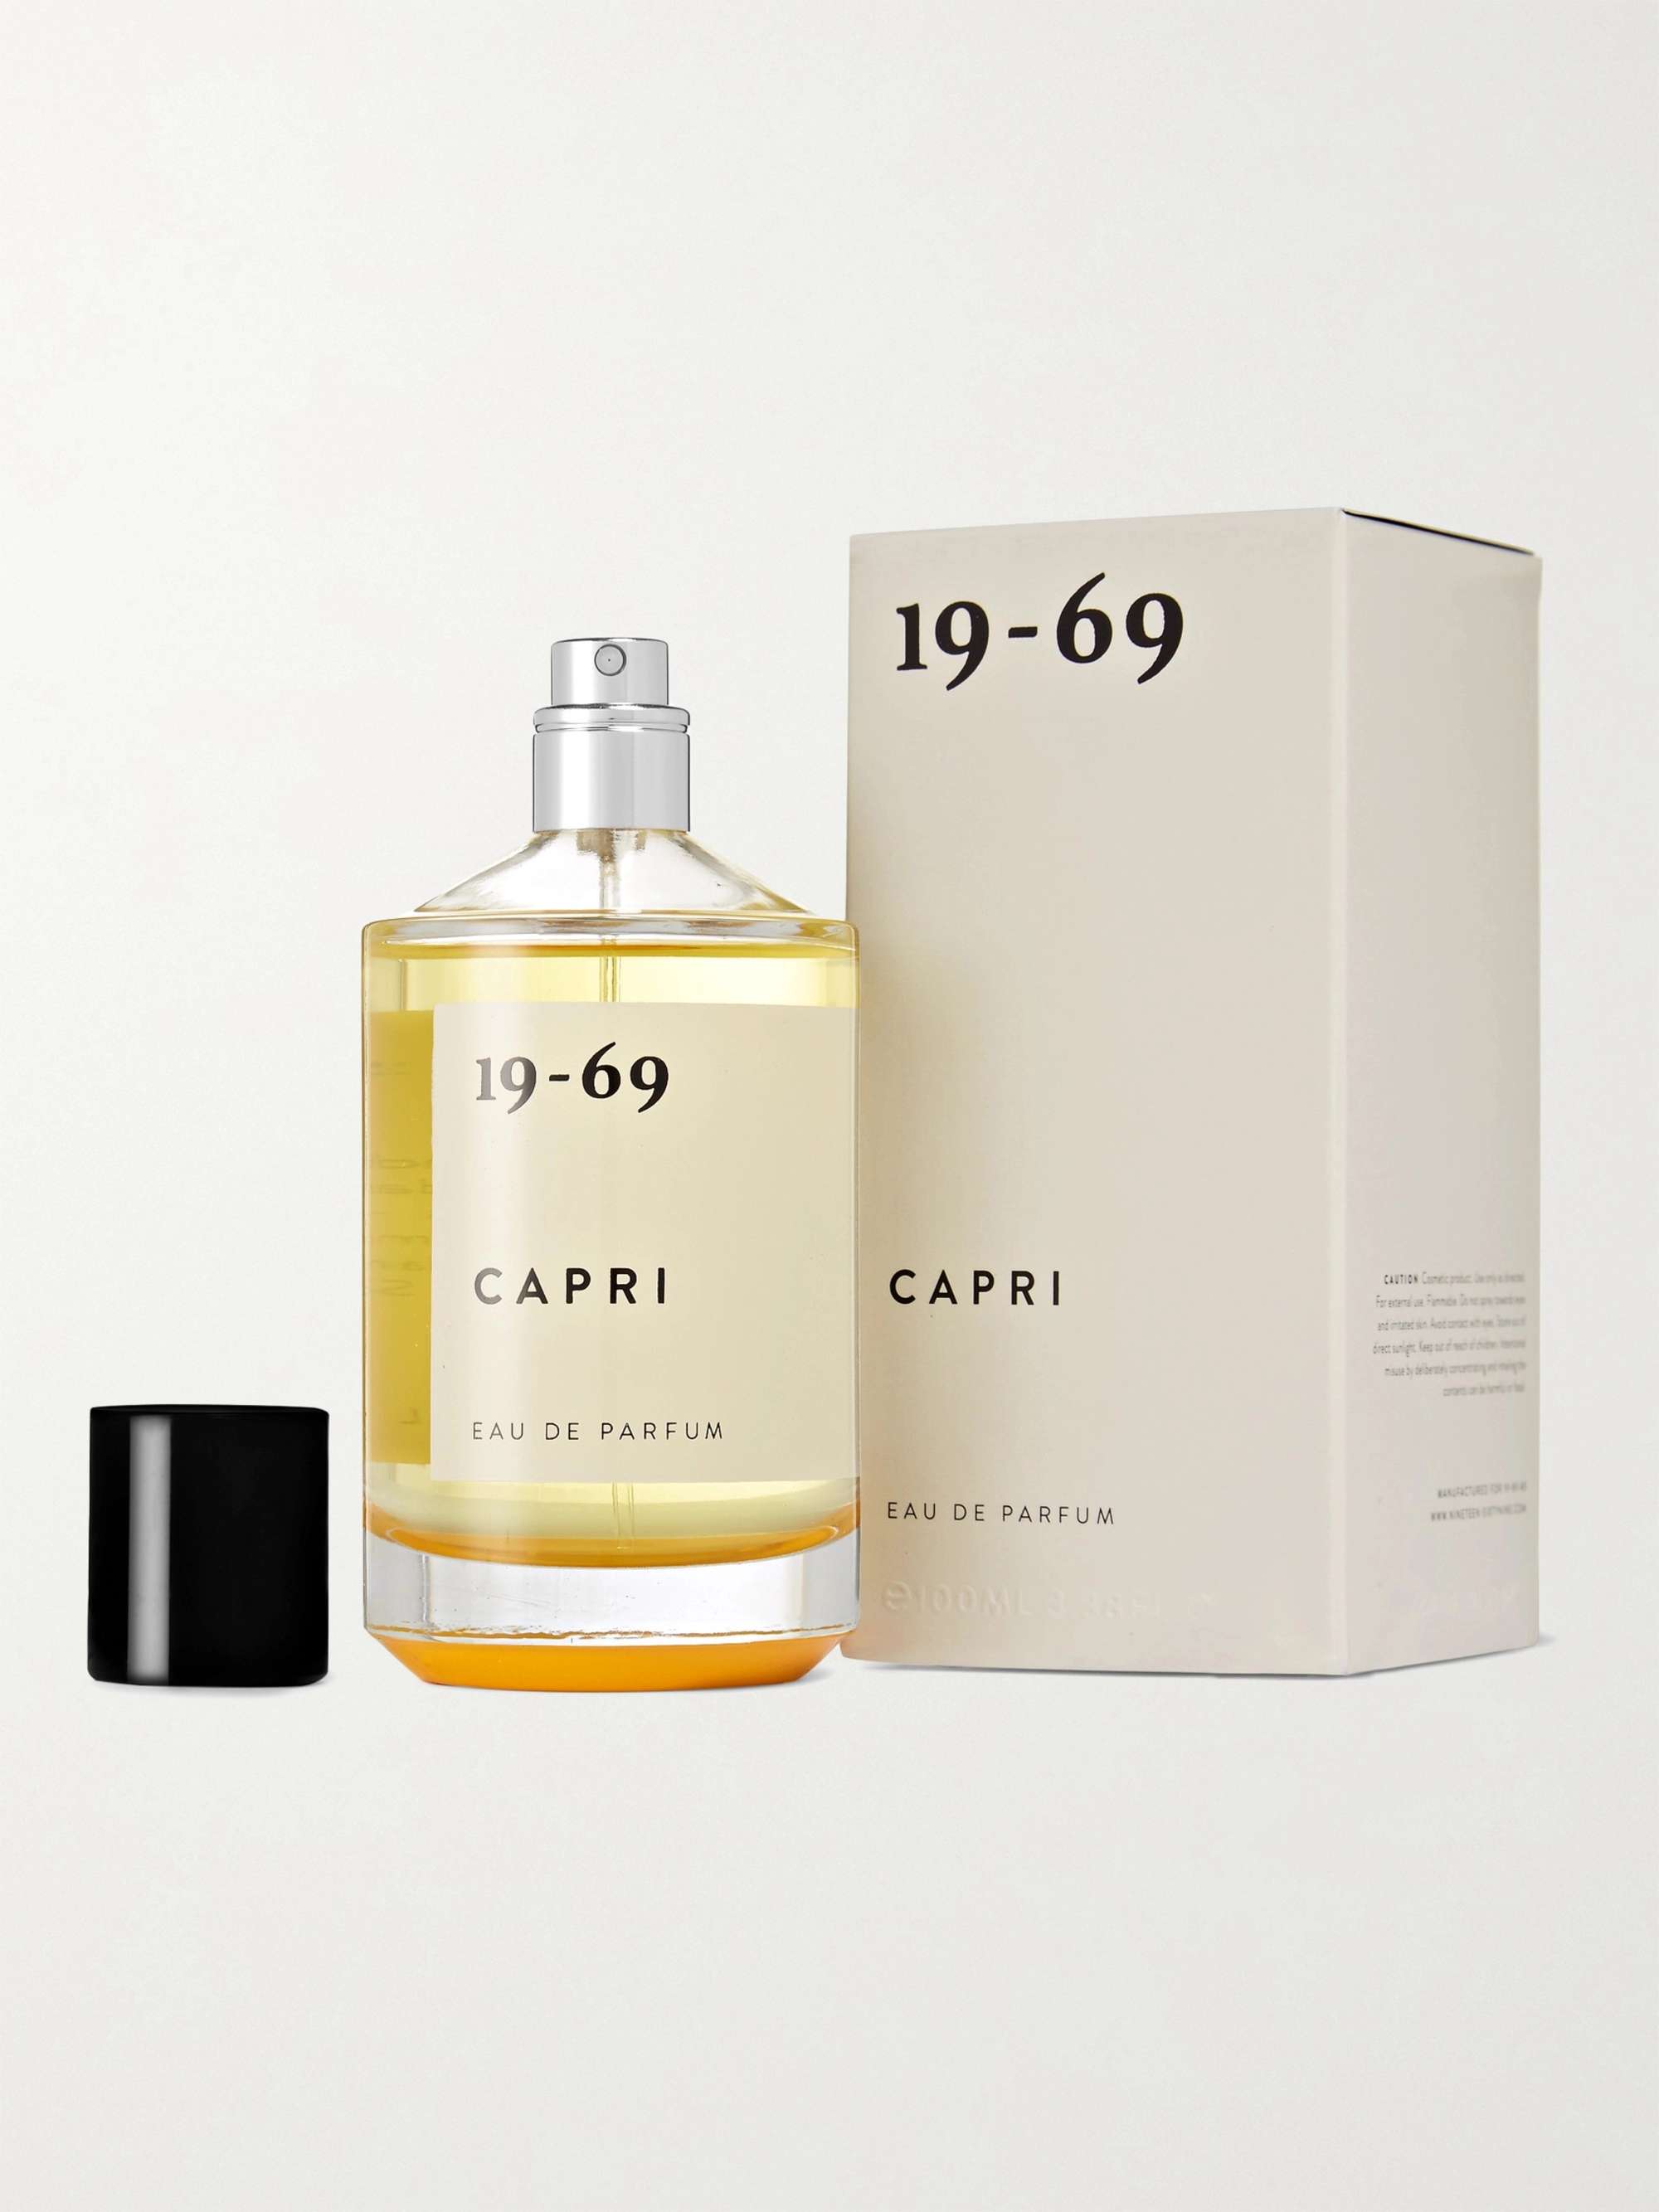 19-69 Capri Eau de Parfum, 100ml